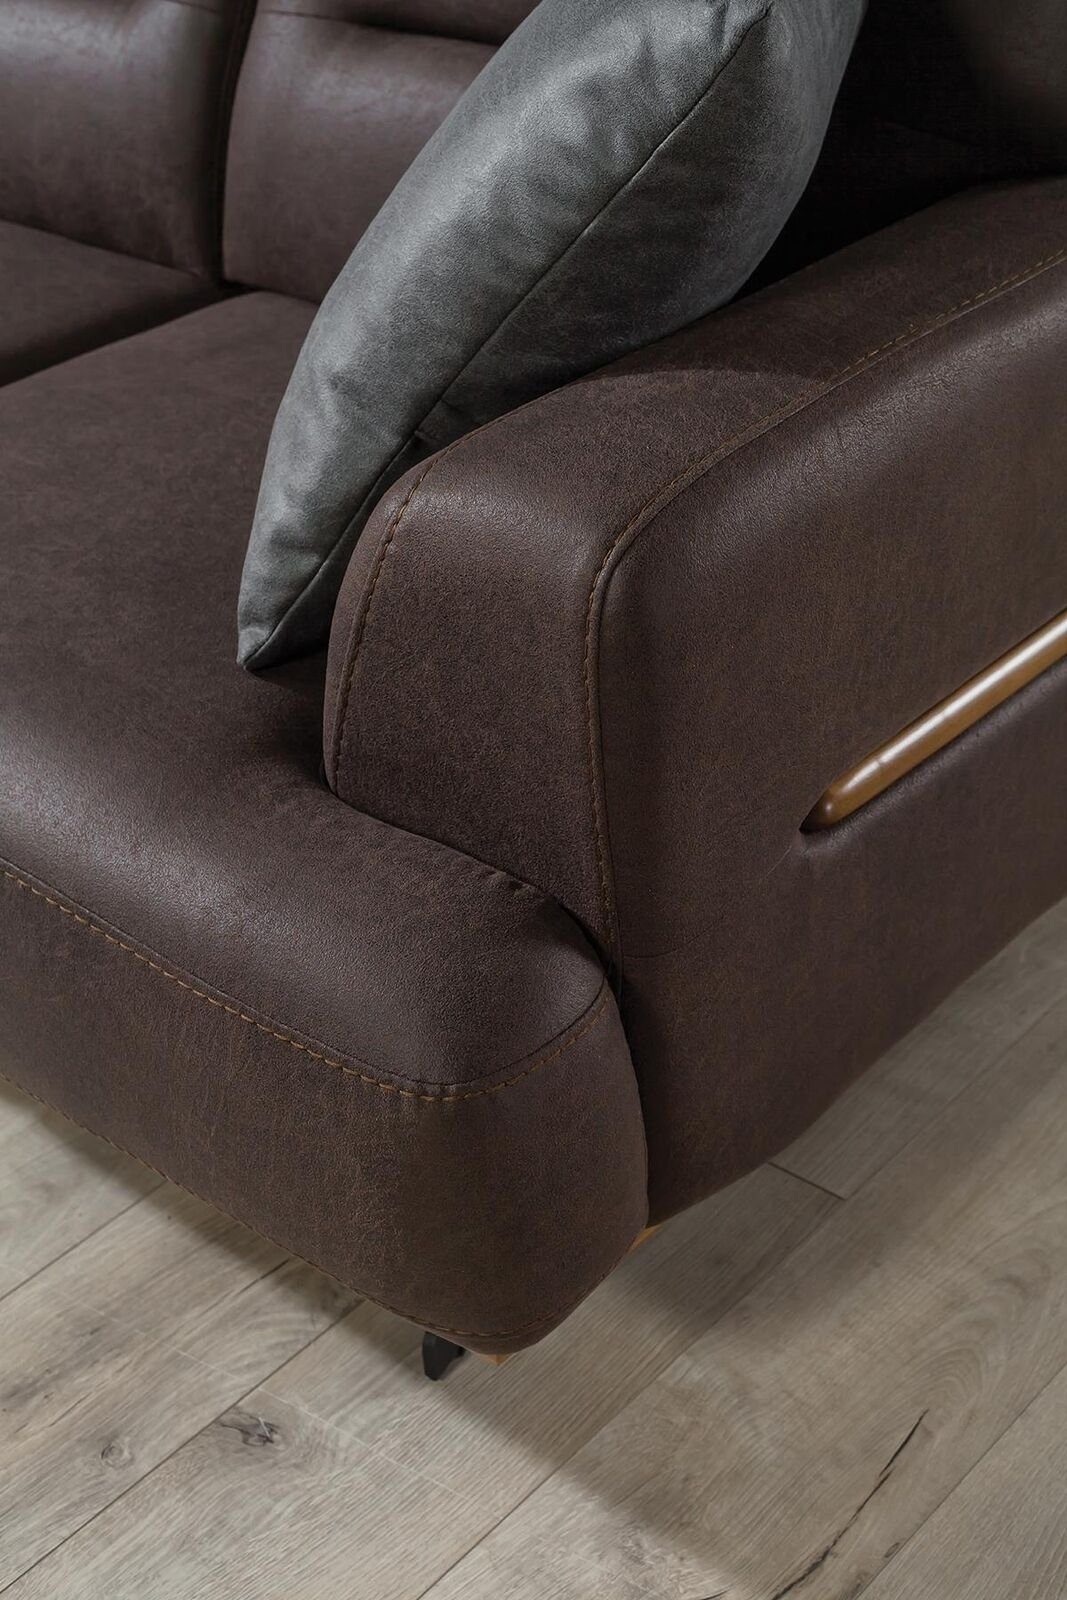 3 Teile, Sitz Sofa Couch Made Modern in Dreisitzer, Sitzpolster 1 Sofa Möbel Leder Braun JVmoebel Europa